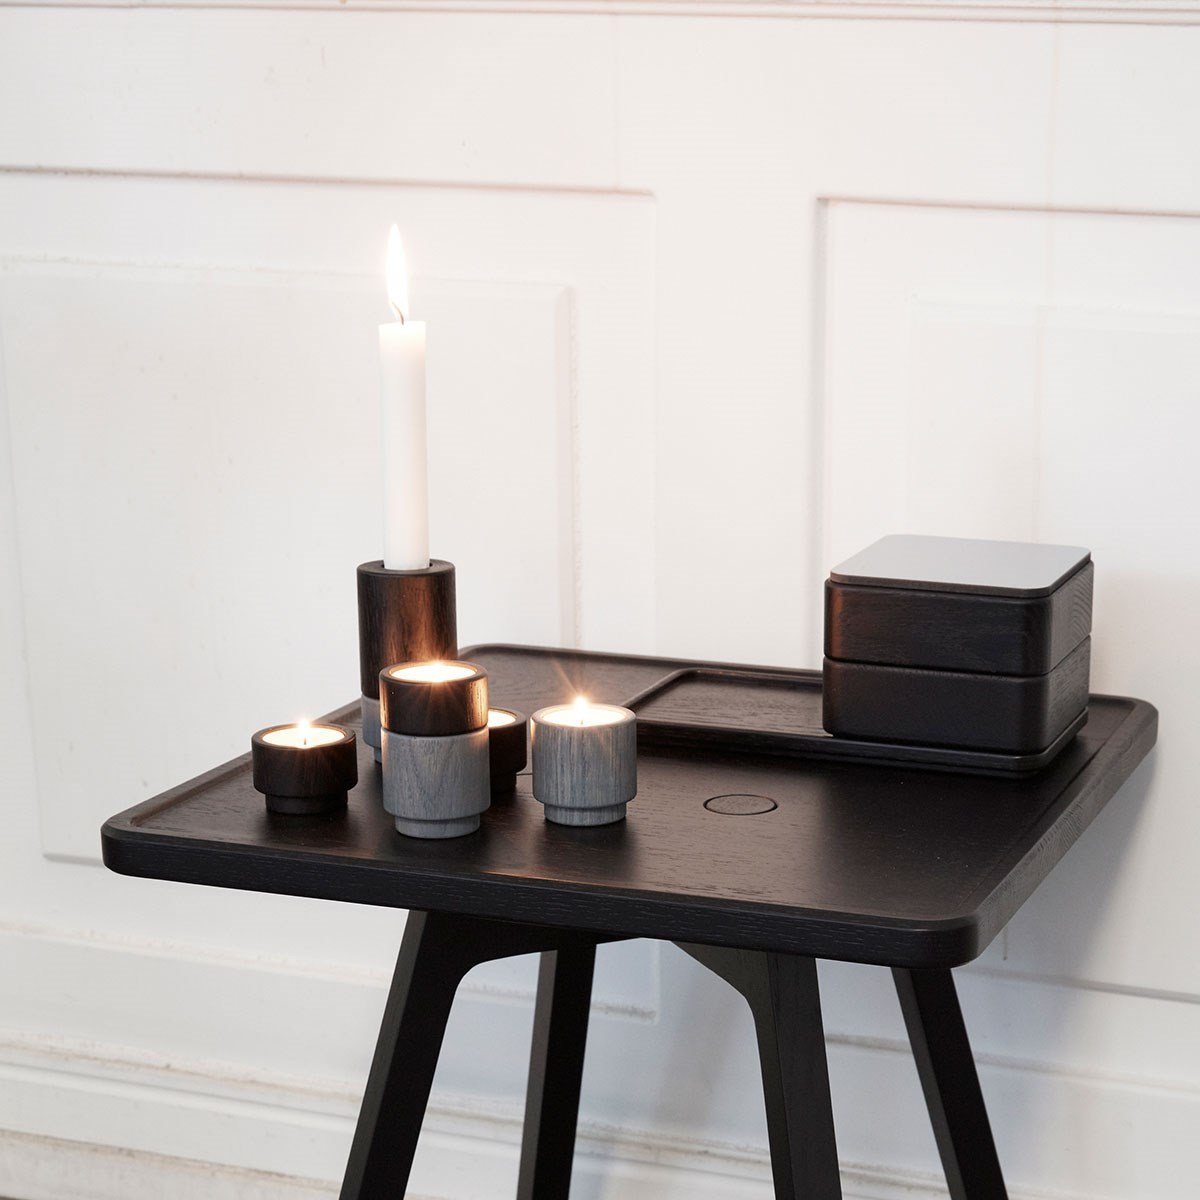 Andersen Furniture Create Me Tealight Holder Ocean Grey, 3cm